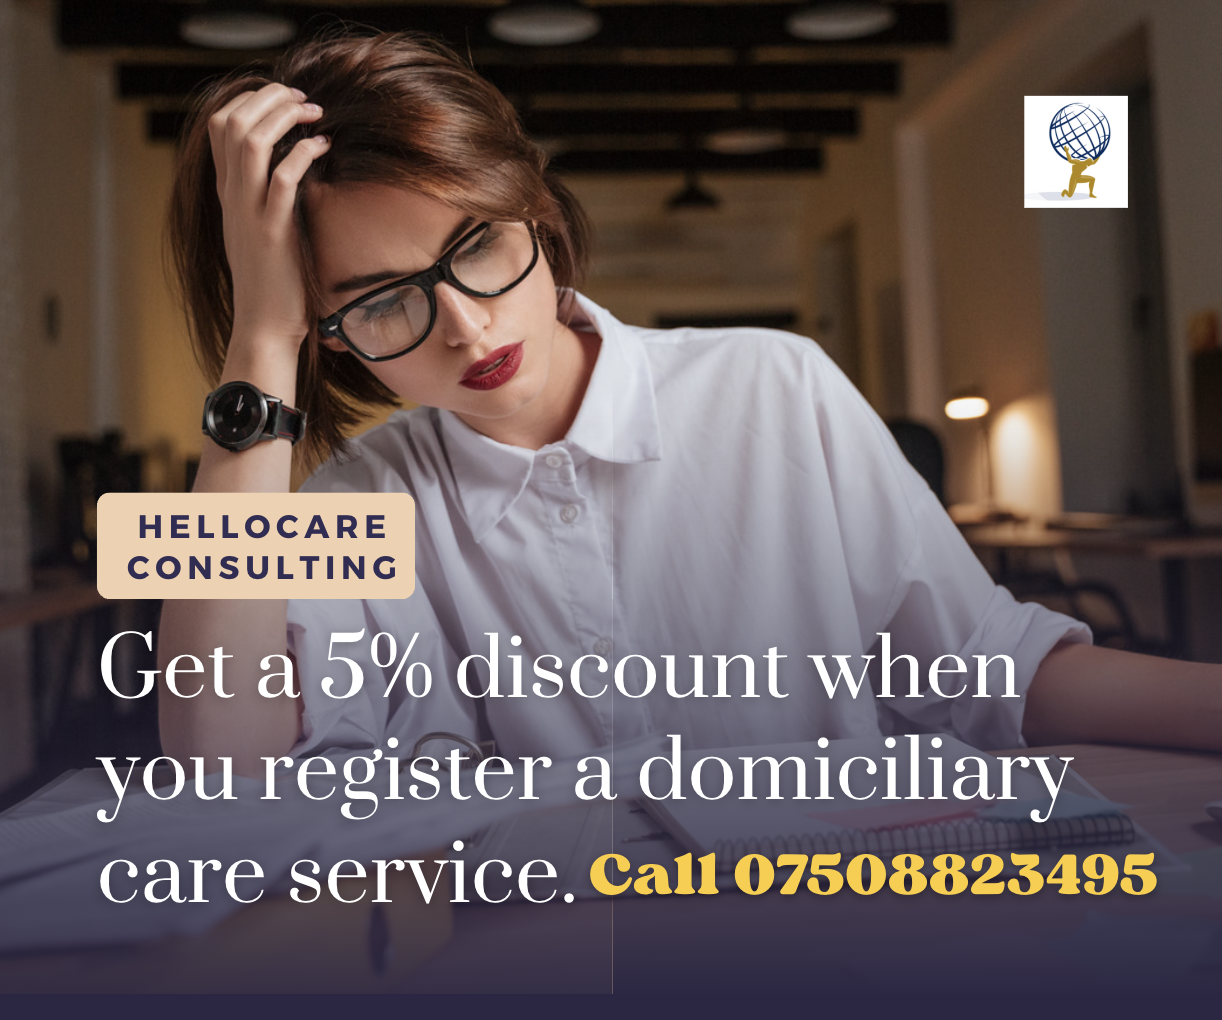 Domiciliary Care Registration